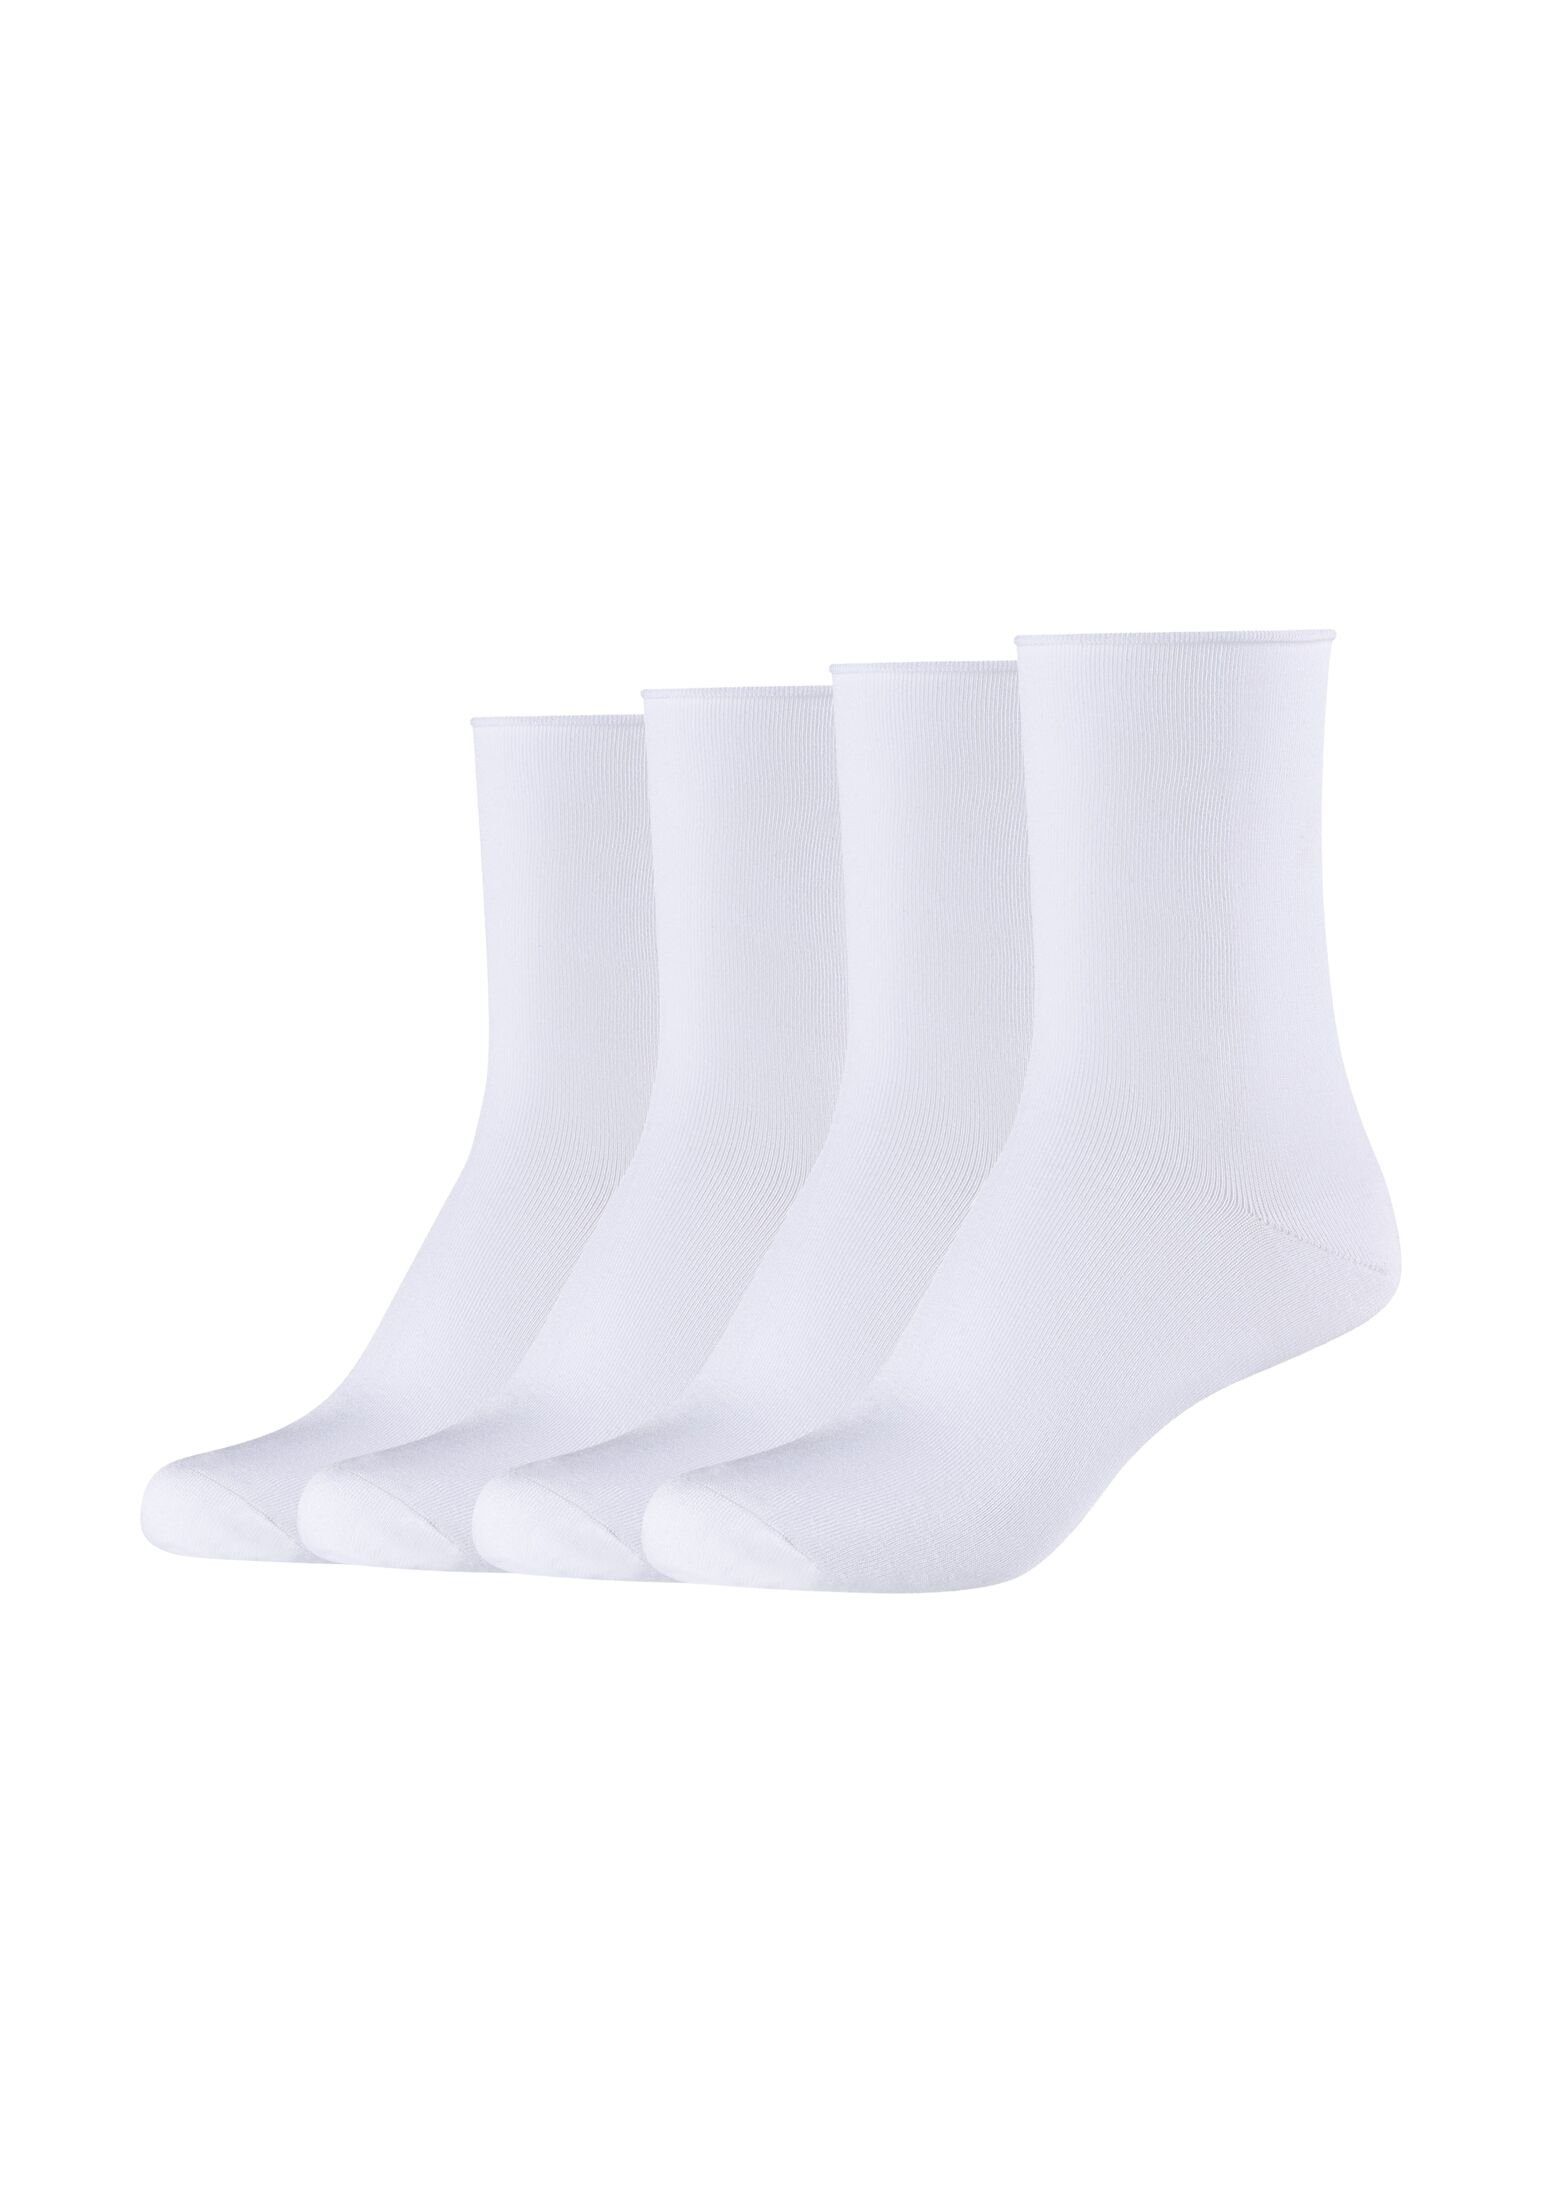 s.Oliver Pack white 4er Socken Socken